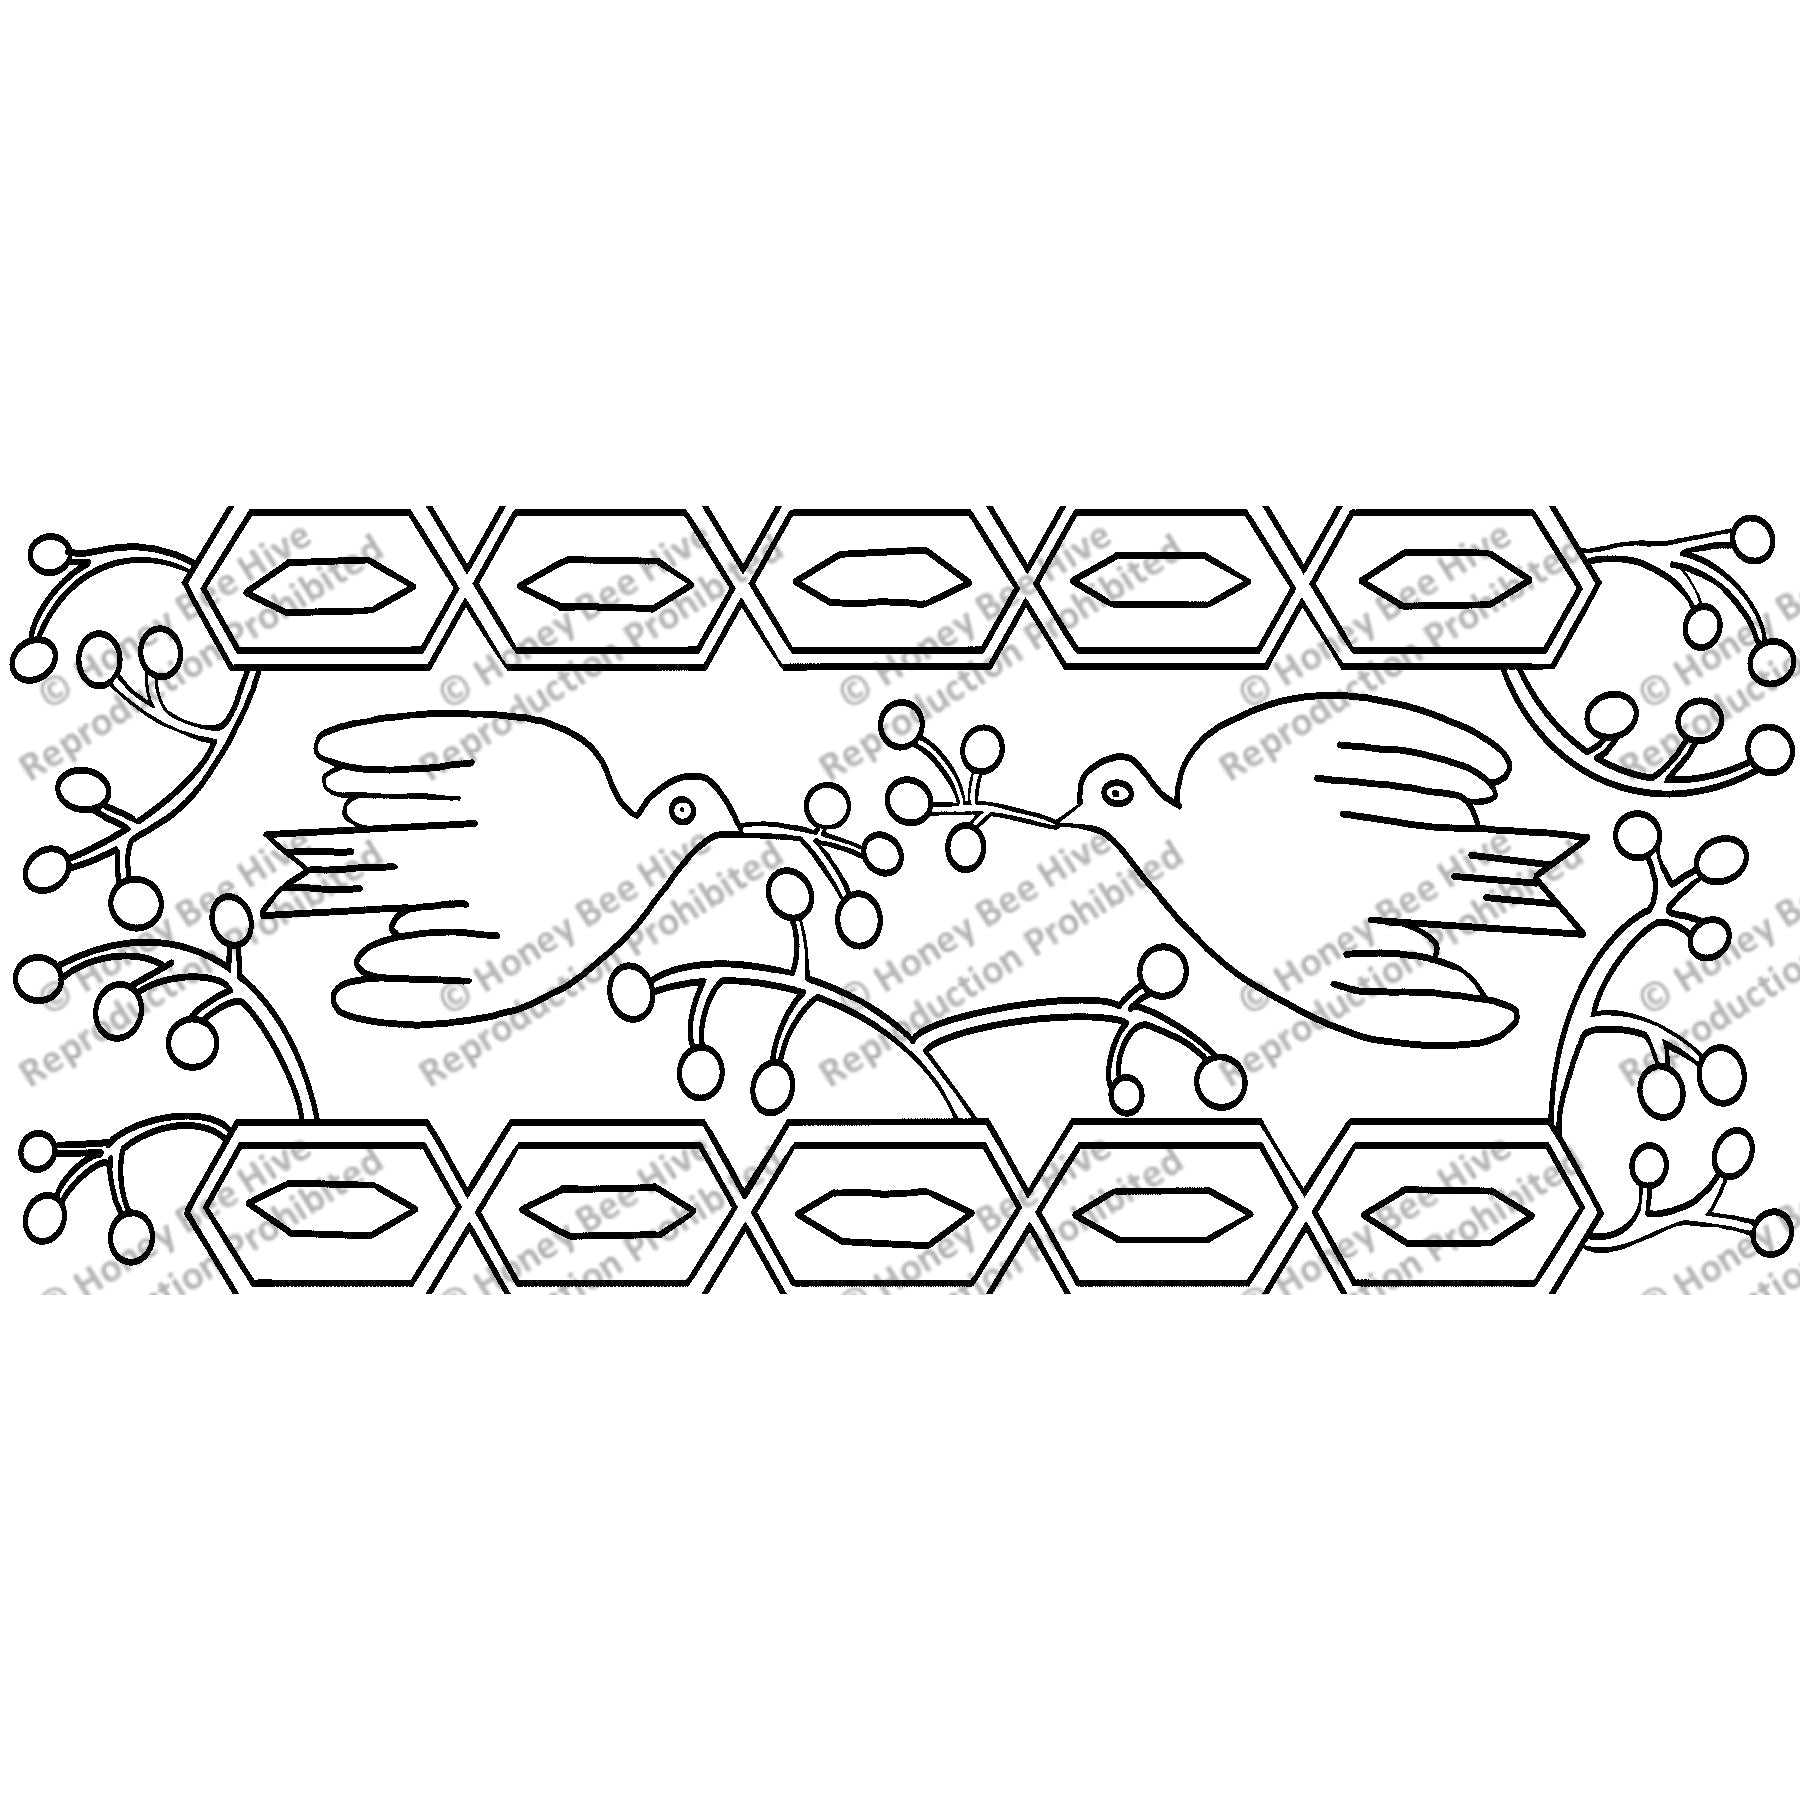 Doves + Berries, rug hooking pattern